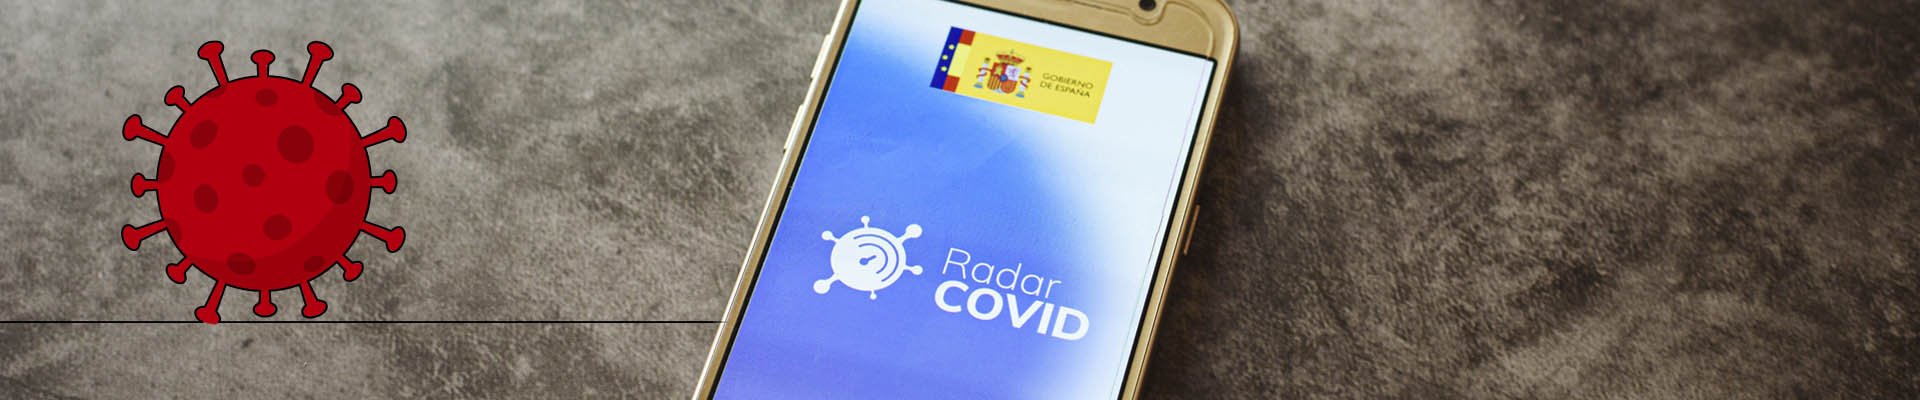 Se pone en marcha la aplicación Radar Covid